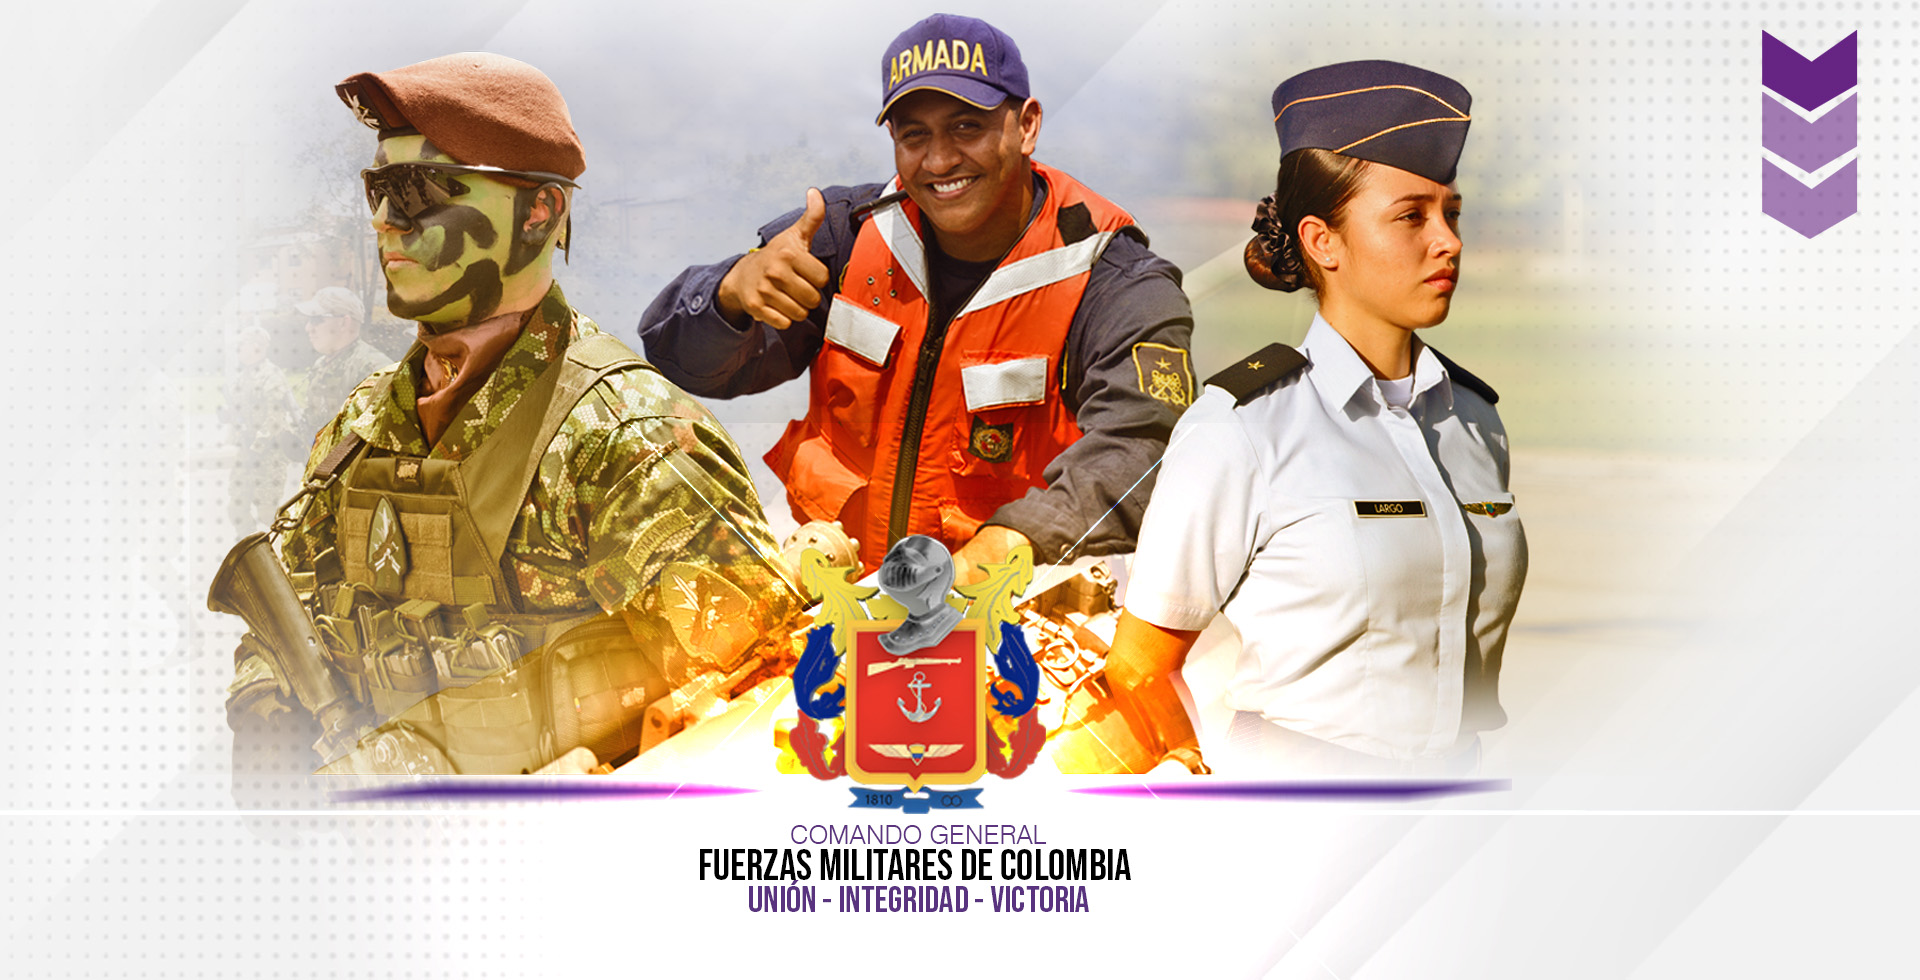 COMANDO GENERAL FUERZAS MILITARES DE COLOMBIA UNION-INTEGRIDAD-VICTORIA